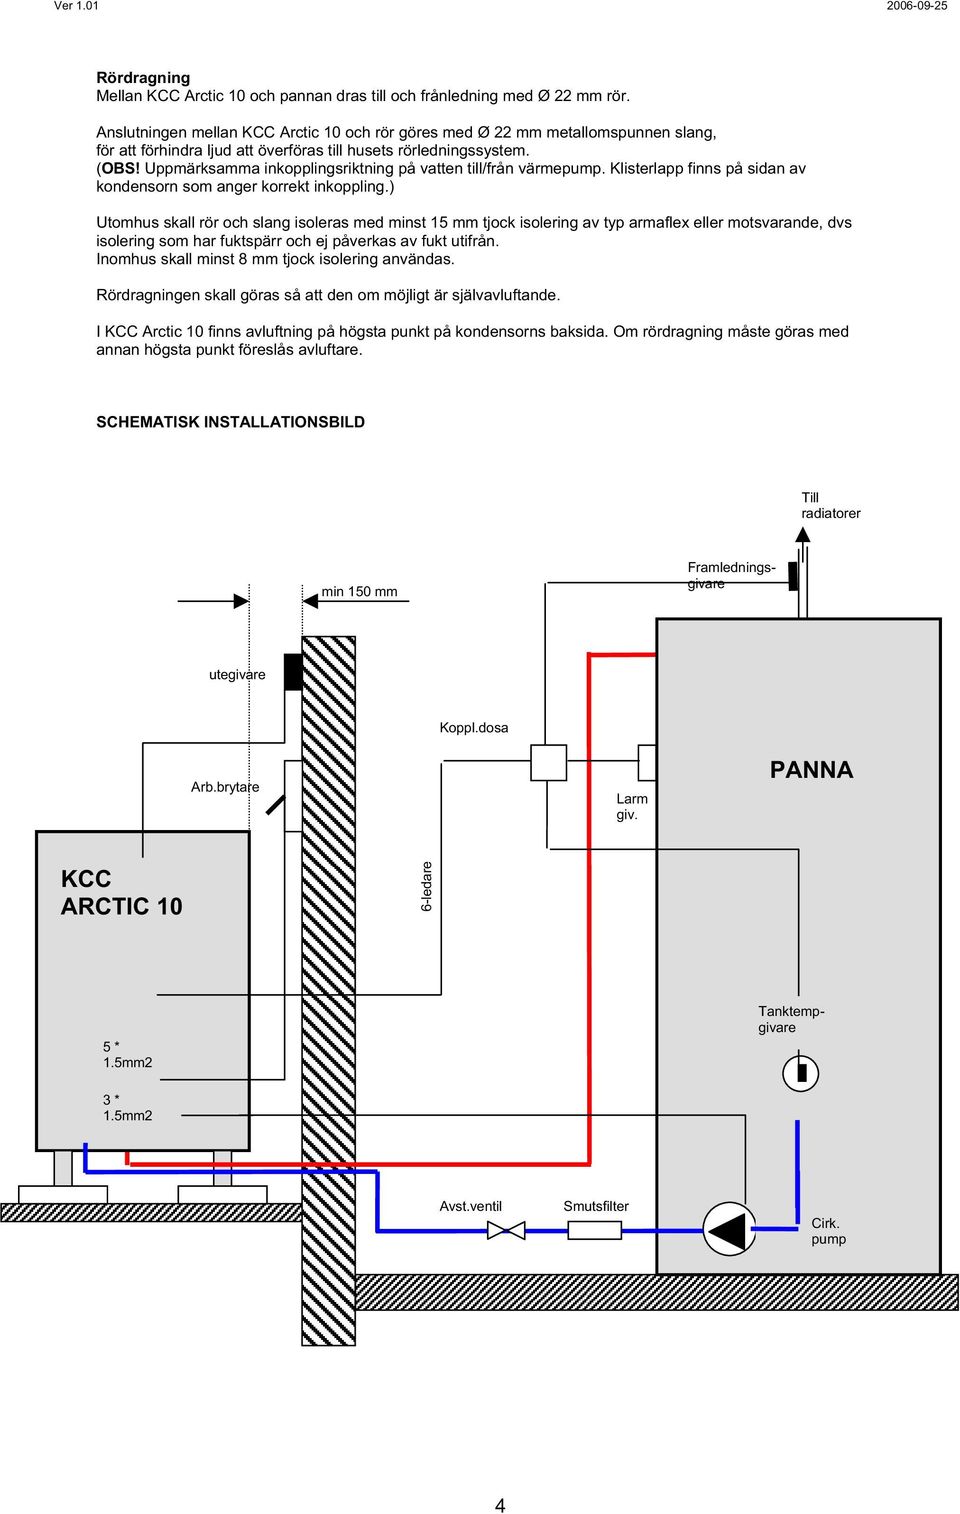 Uppmärksamma inkopplingsriktning på vatten till/från värmepump. Klisterlapp finns på sidan av kondensorn som anger korrekt inkoppling.